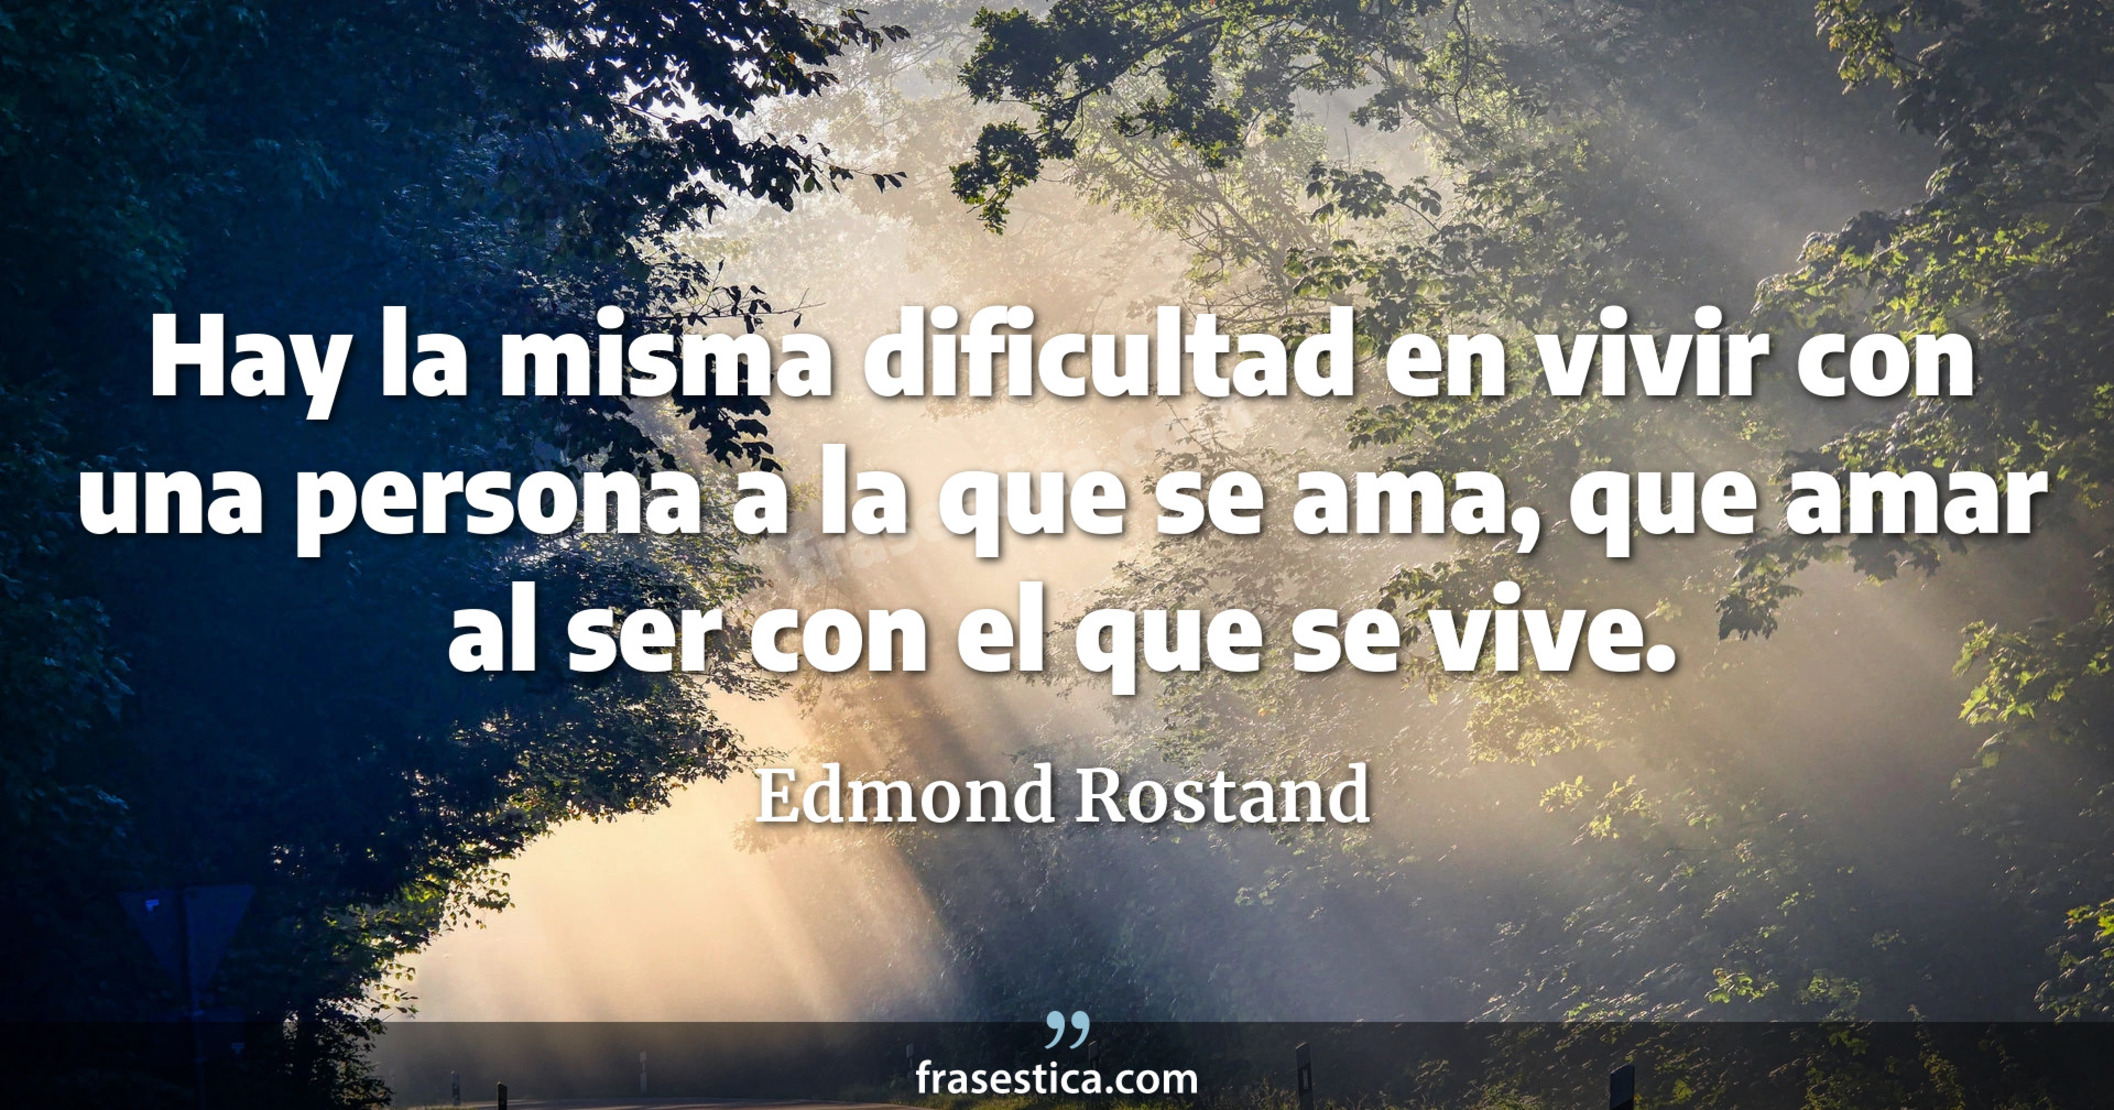 Hay la misma dificultad en vivir con una persona a la que se ama, que amar al ser con el que se vive. - Edmond Rostand